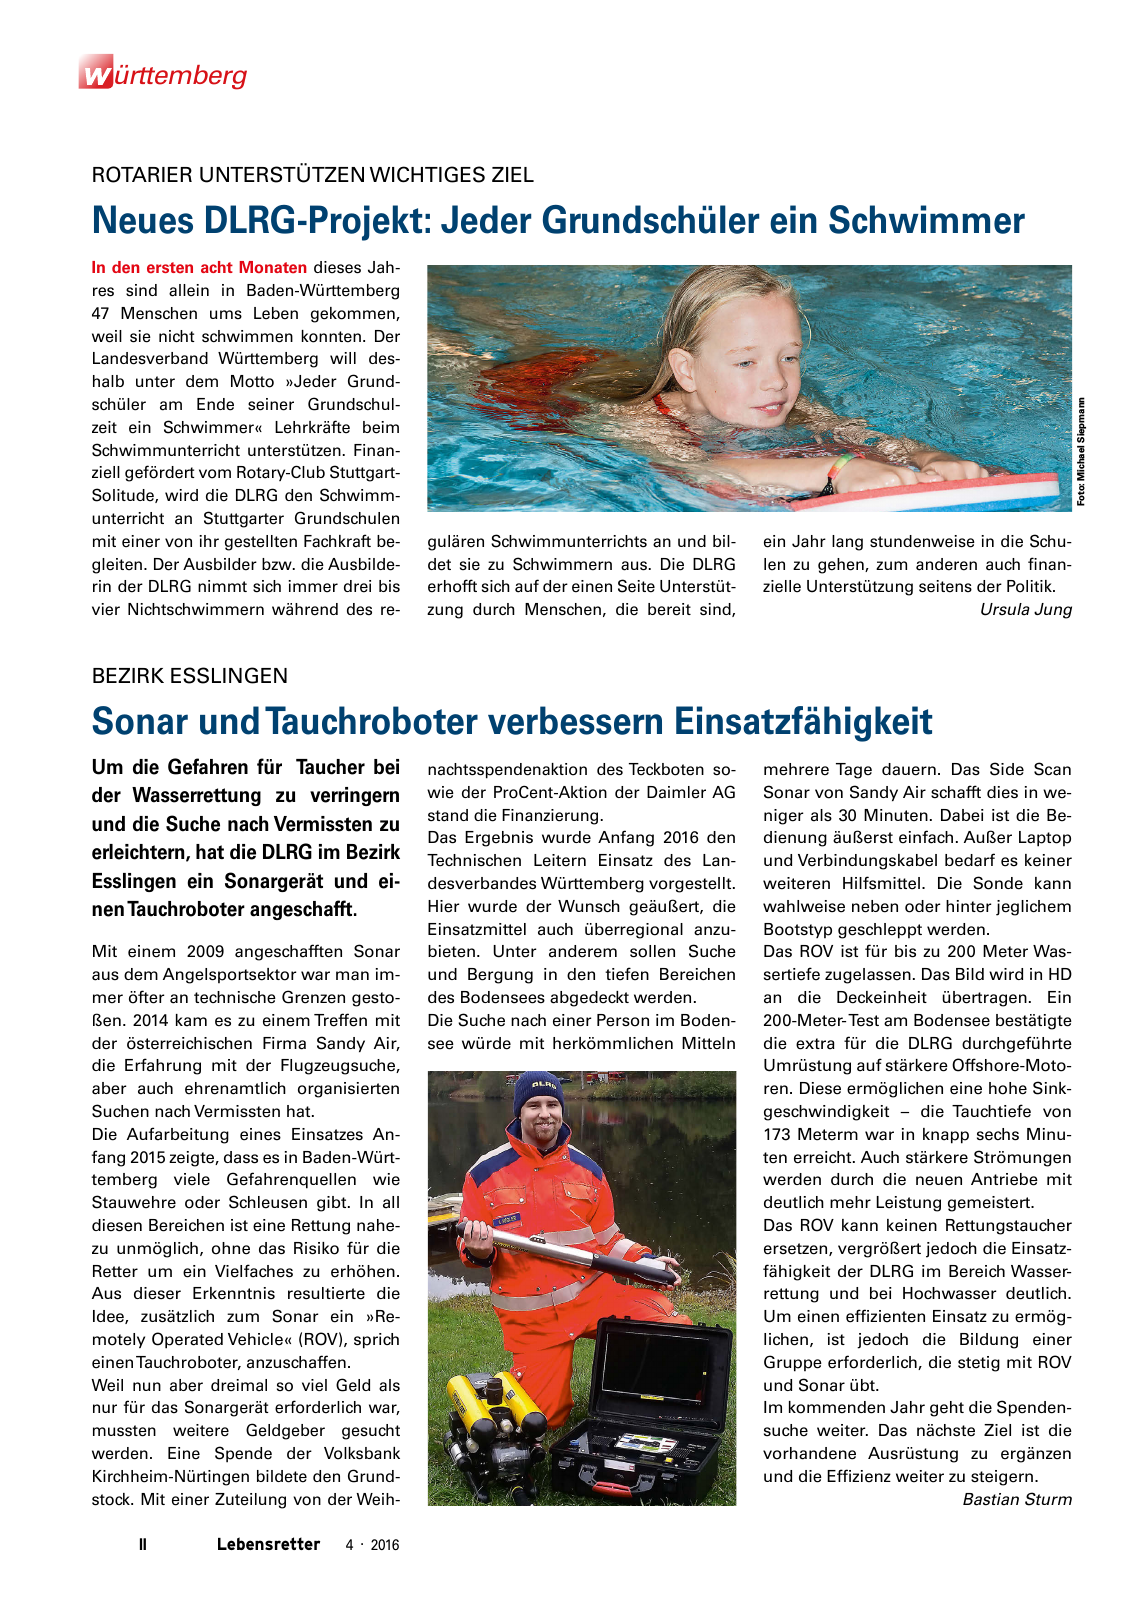 Vorschau Lebensretter 4/2016 - Regionalausgabe Württemberg Seite 4